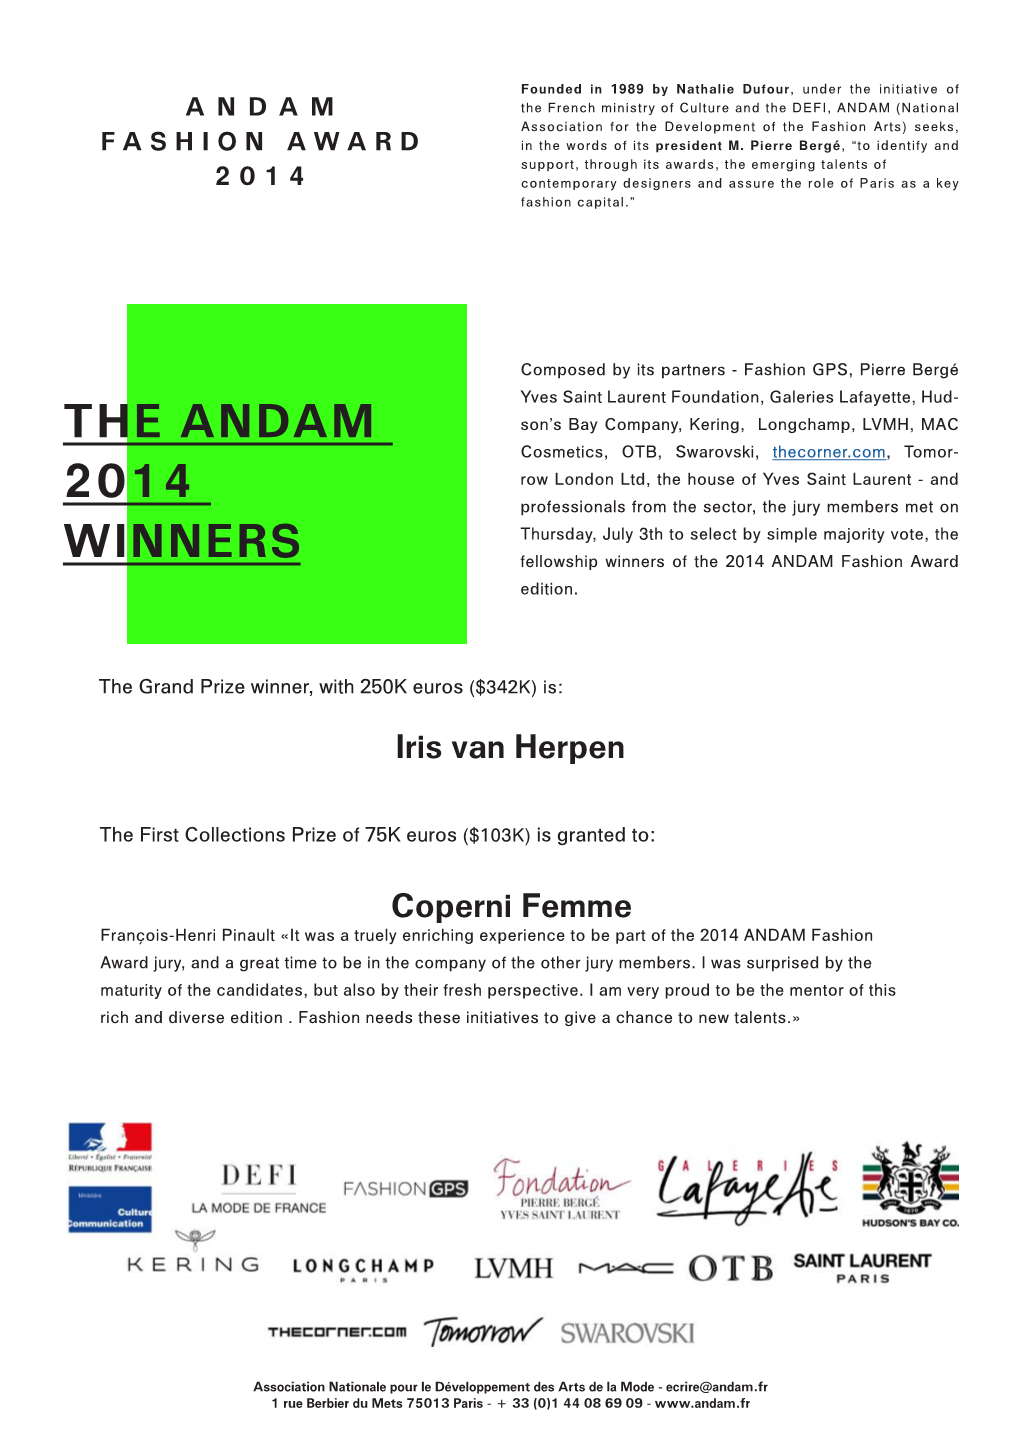 The Andam 2014 Winners